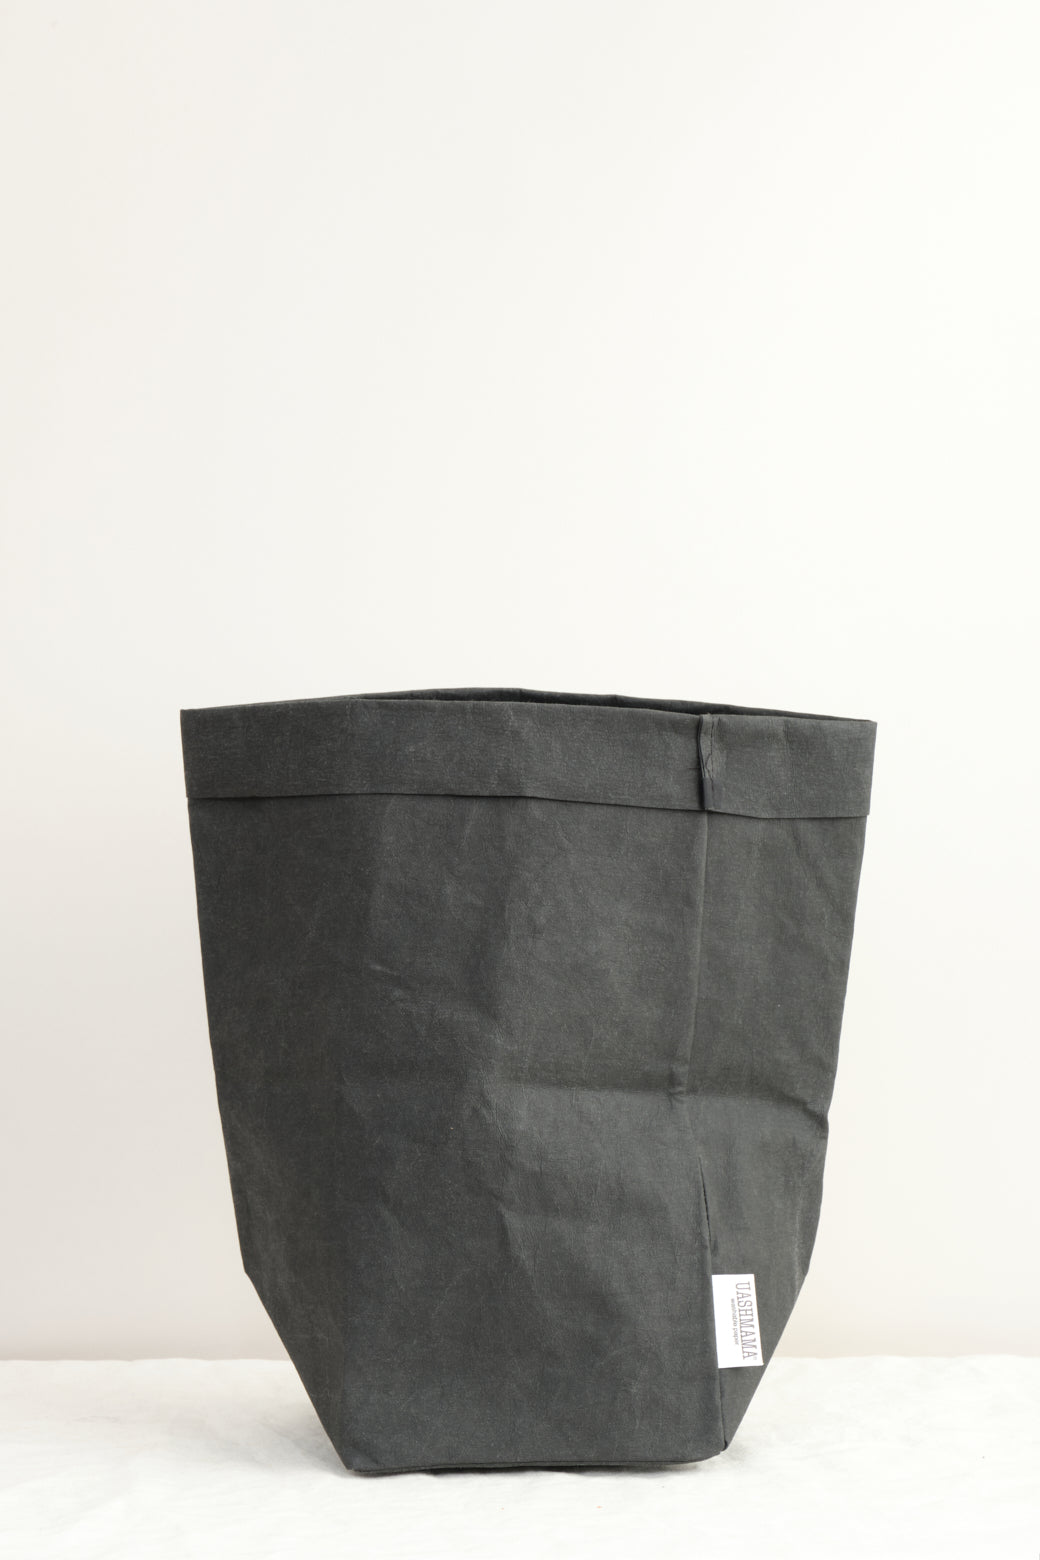 Uashmama Large Plus Paper Bag Black